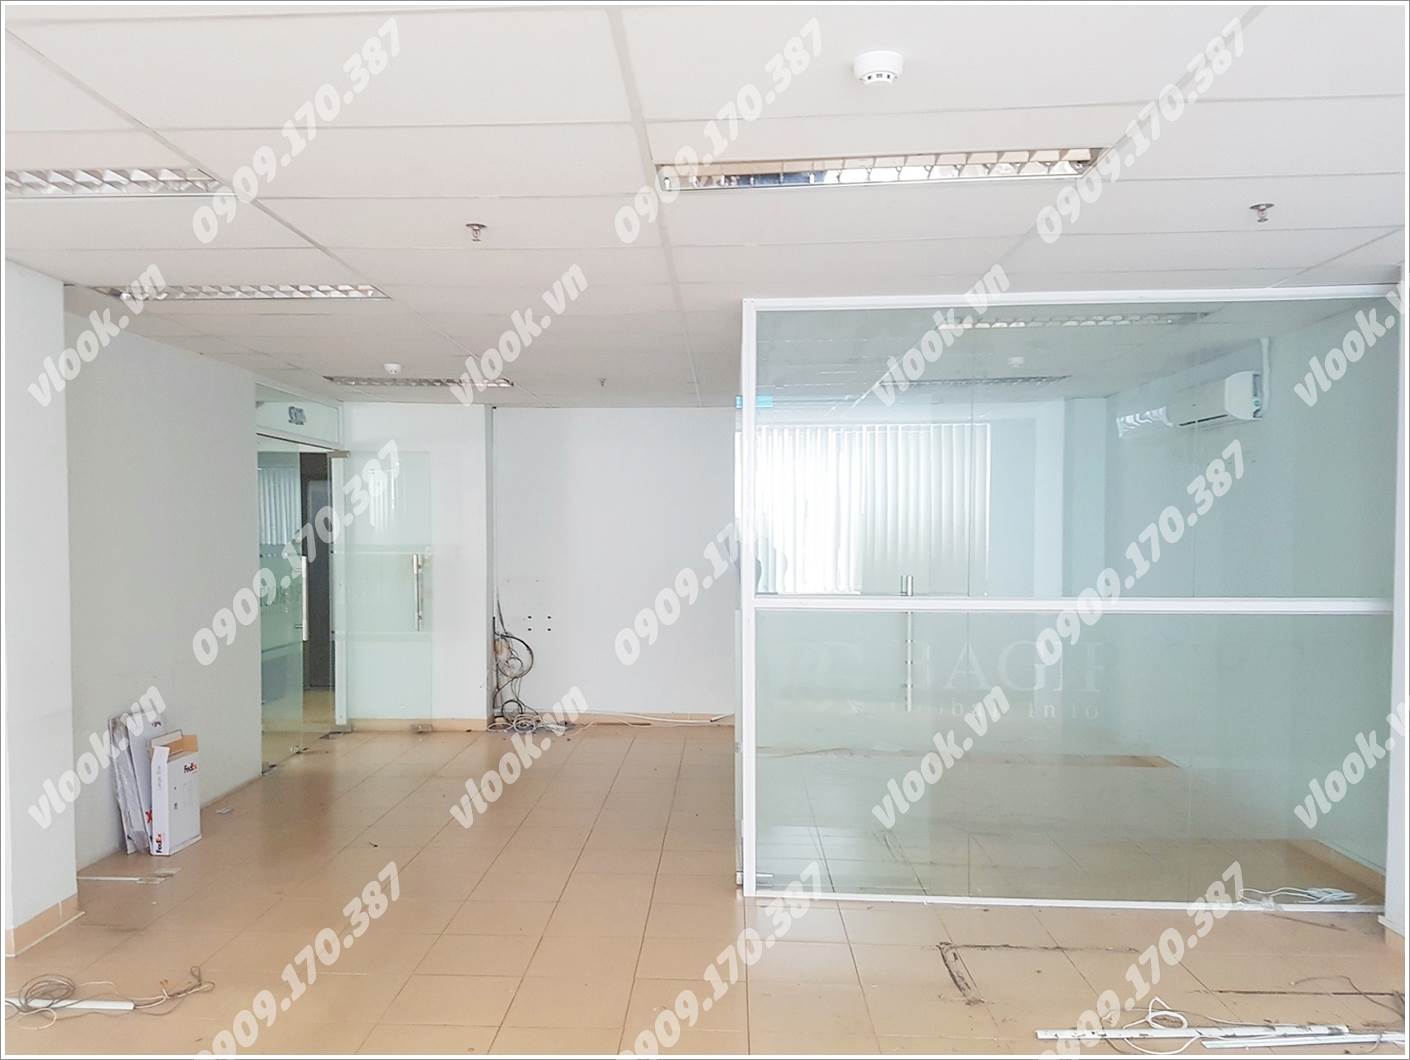 Cao ốc văn phòng cho thuê Narime Building, Đoàn Như Hài, Quận 4, TPHCM - vlook.vn